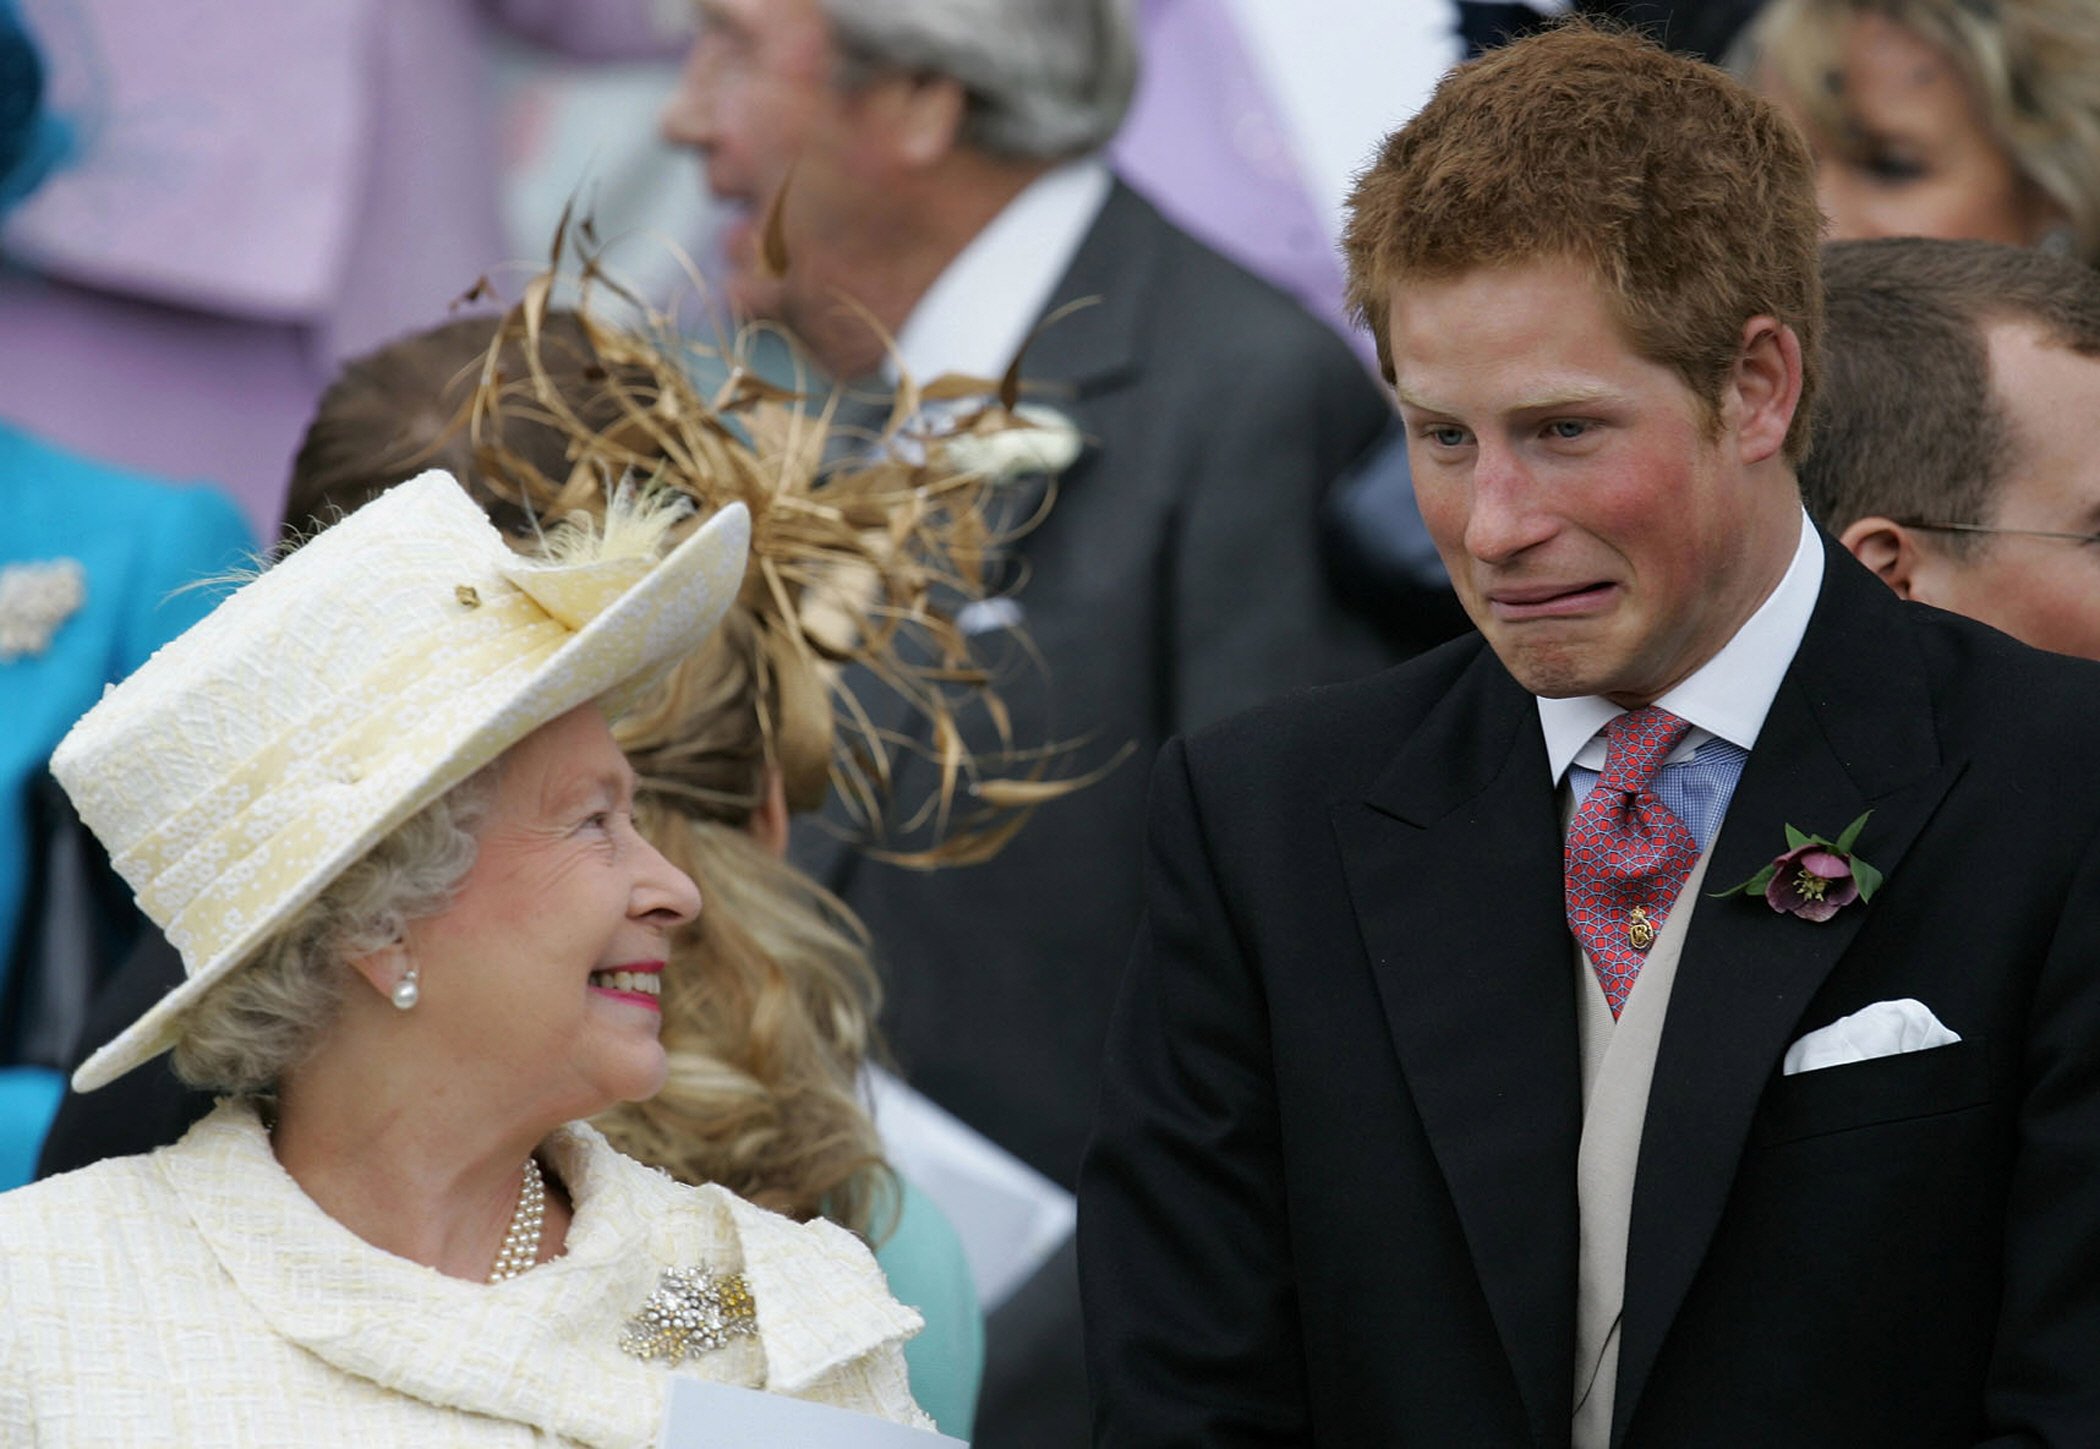 La reine Elizabeth II et son petit-fils le prince Harry regardent le prince Charles et Camilla, duchesse de Cornouailles, quitter la chapelle Saint-Georges après la bénédiction de leur mariage, le 9 avril 2005 à Windsor, au Royaume-Uni┃Source : Getty Images